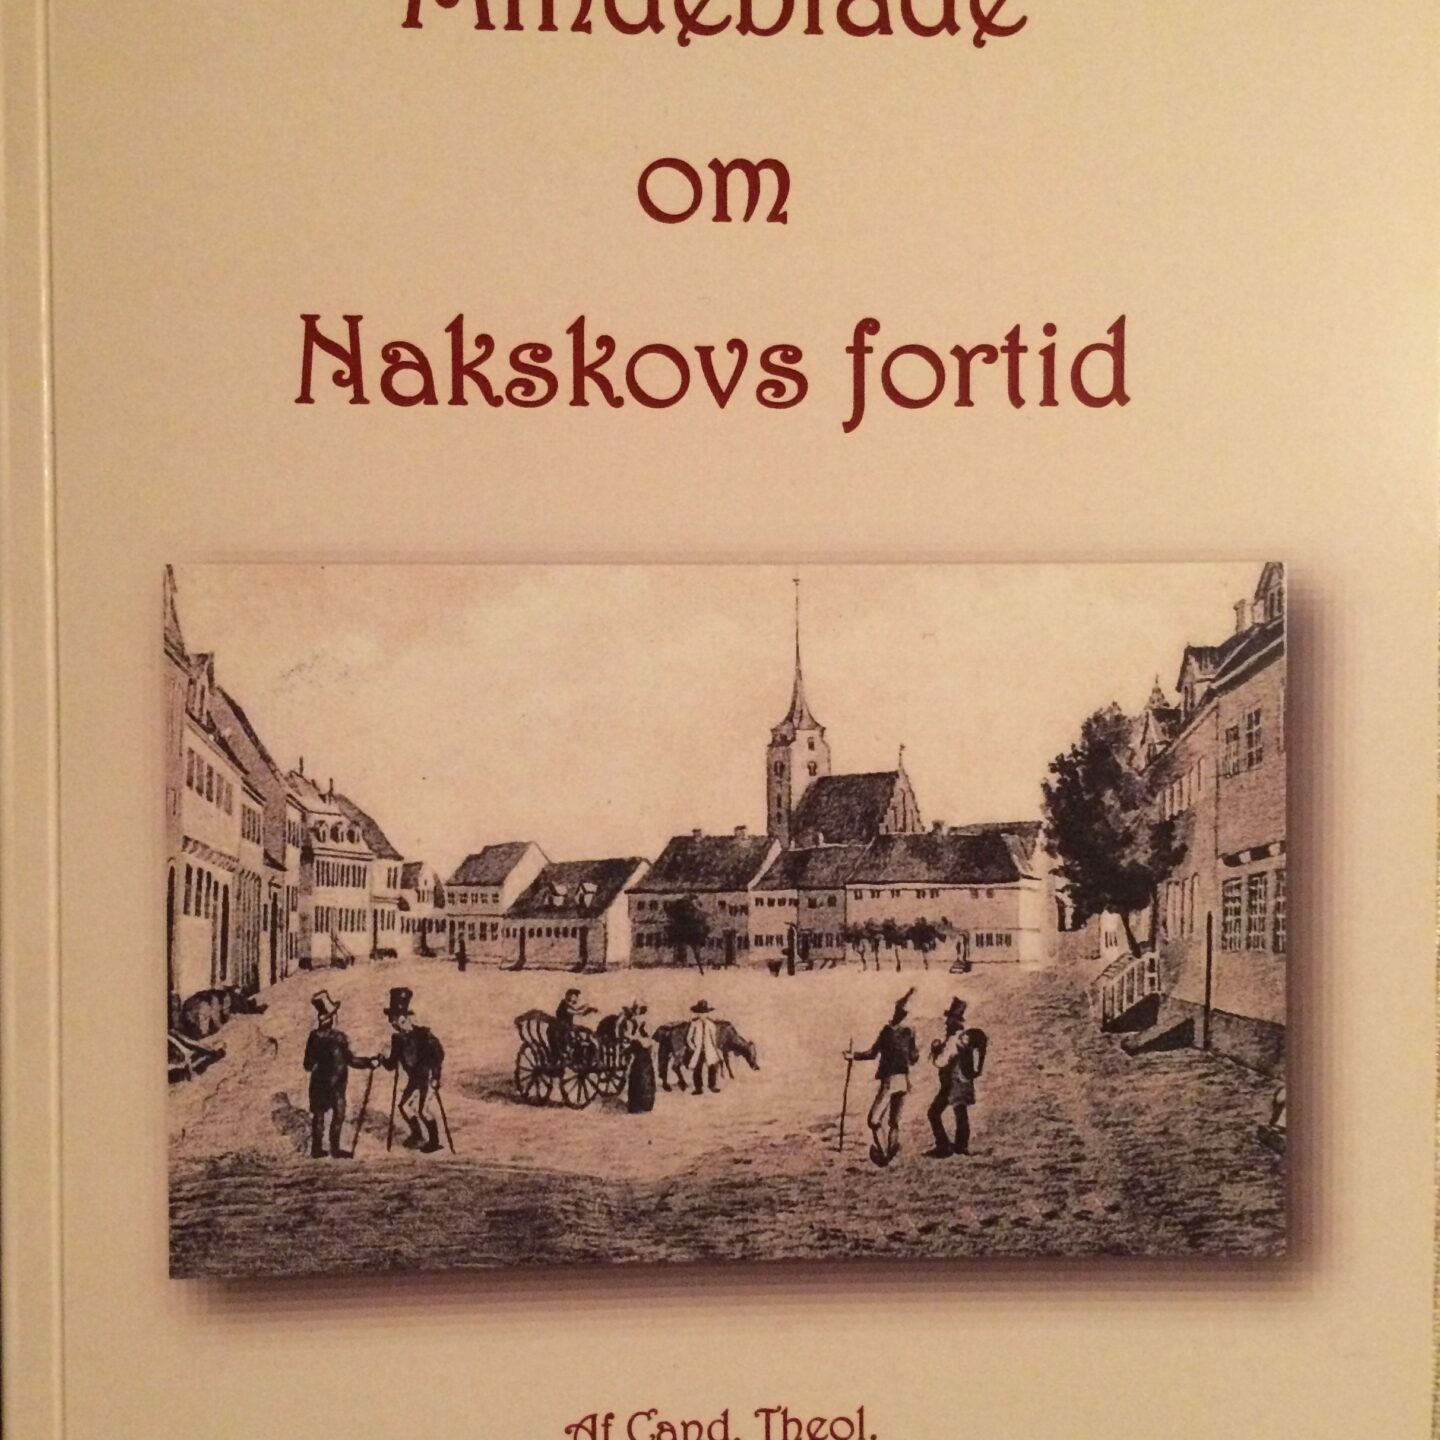 bogens forside mindeblade om Nakskovs fortid